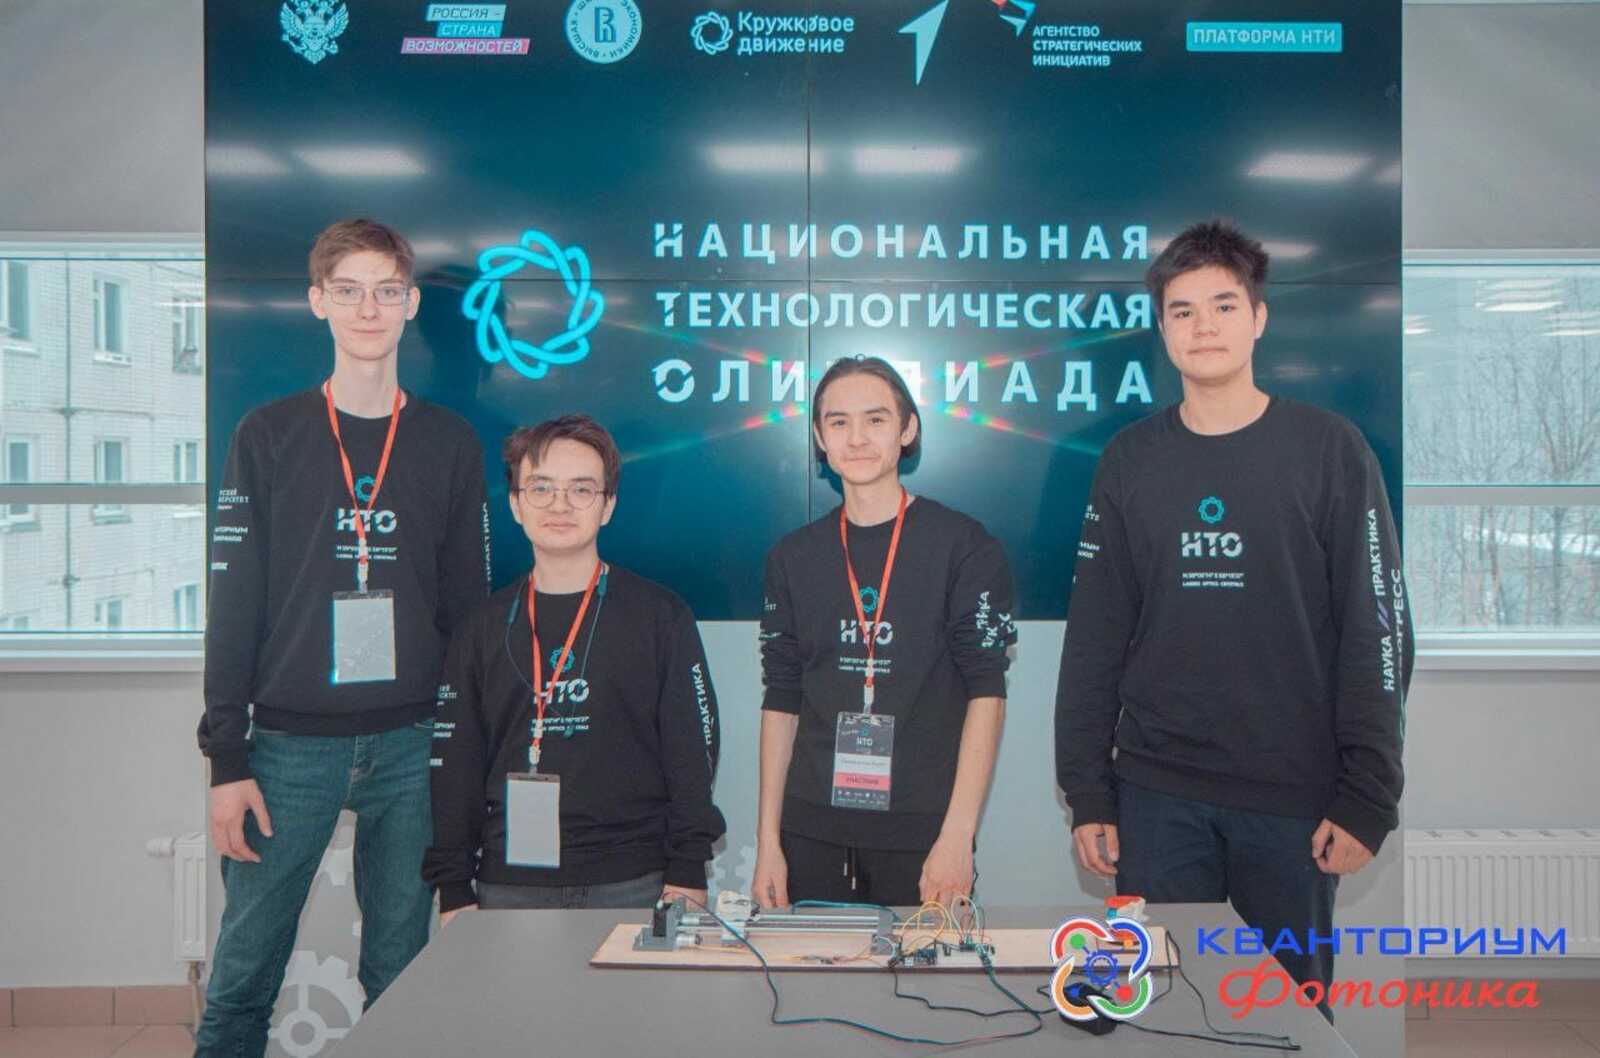 Школьники Башкирии победили в Национальной технологической олимпиаде